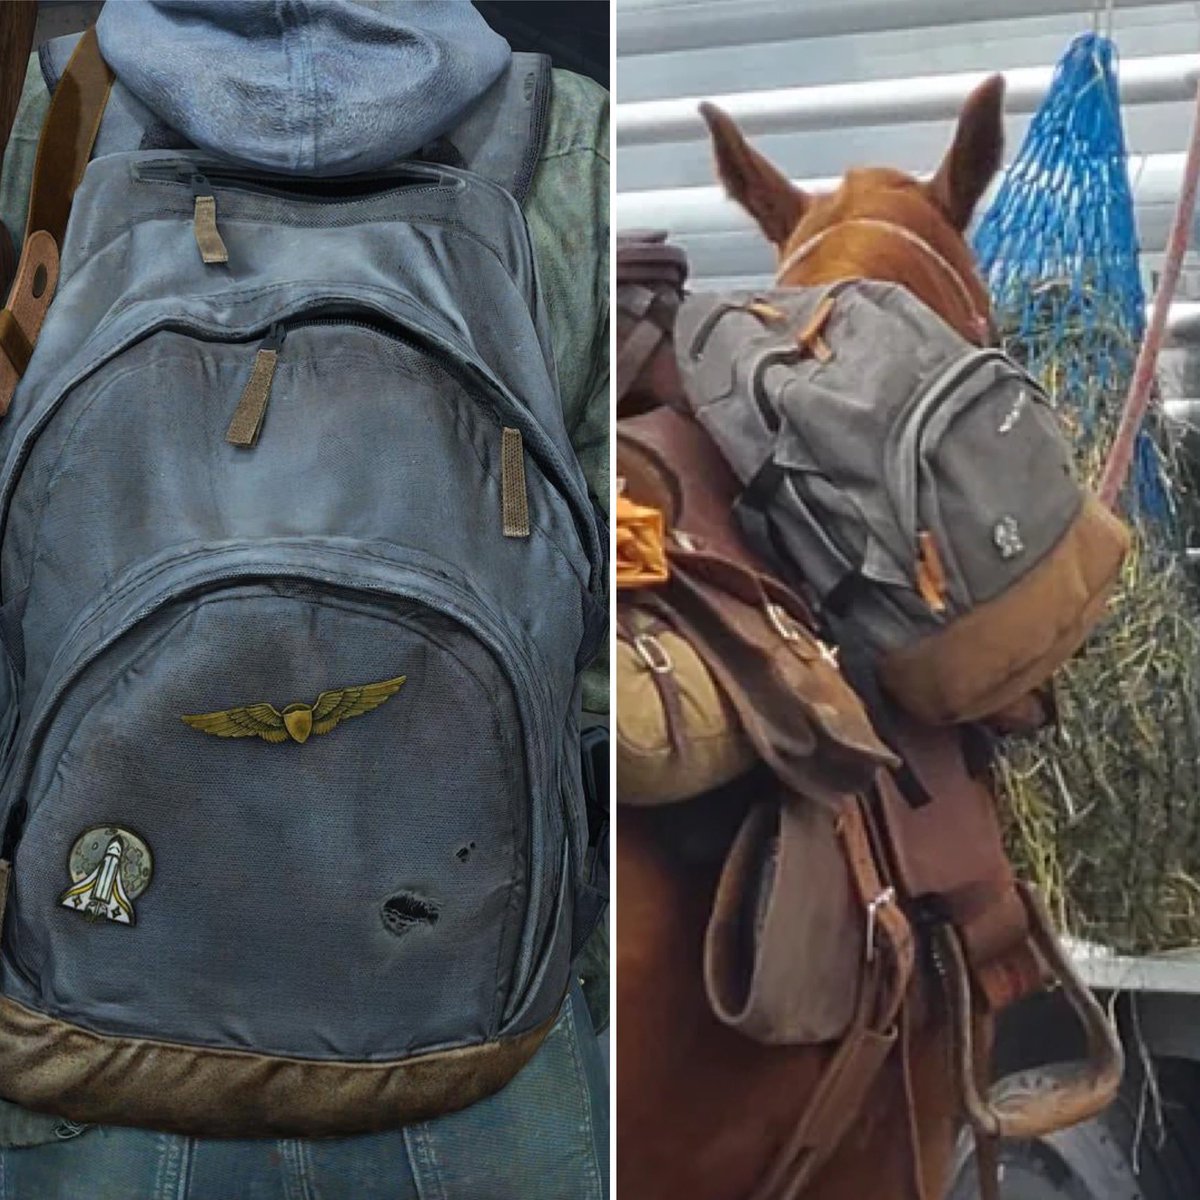 Ellie’s backpack sighting 🎒 

#TheLastofUs